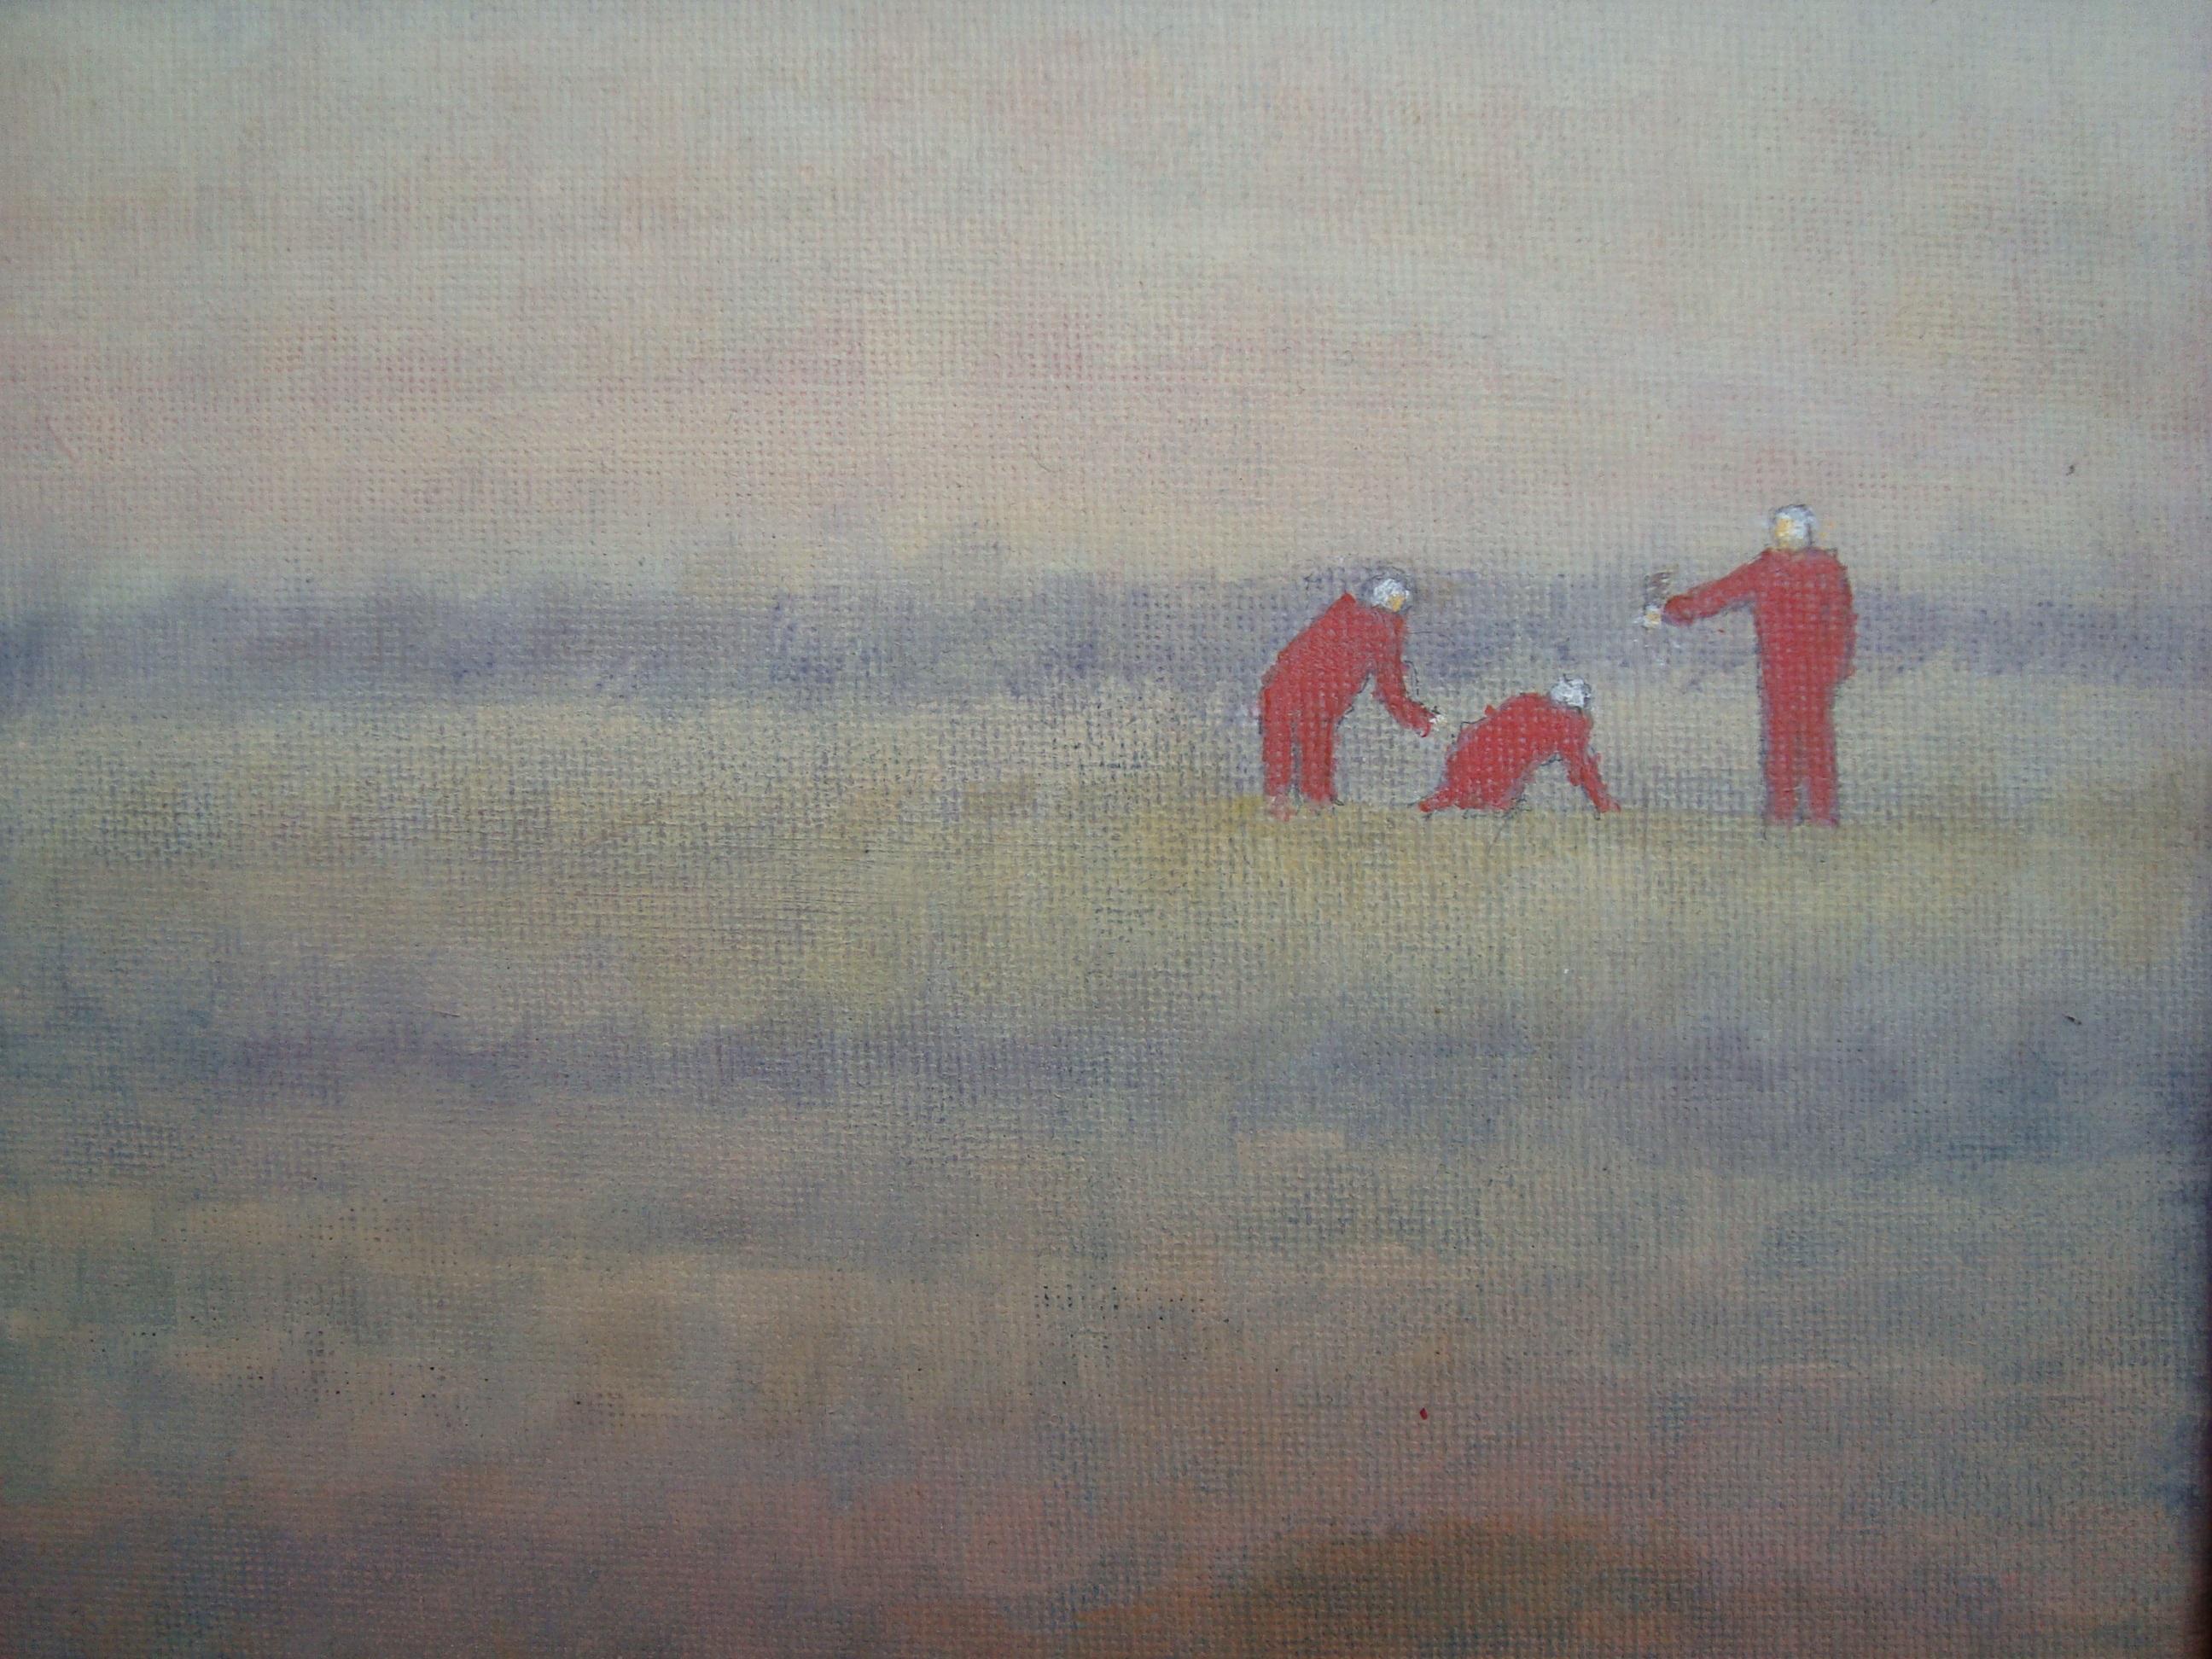 3 Personen graben auf dem Feld - Finden oder verstecken sie etwas? 

Über den Künstler:

Die Gemälde von Bjarne Dahl sind realistisch und figurativ, inspiriert von Landschaften, Menschen und Gebäuden. Die Farben sind oft gedämpft, mit einem